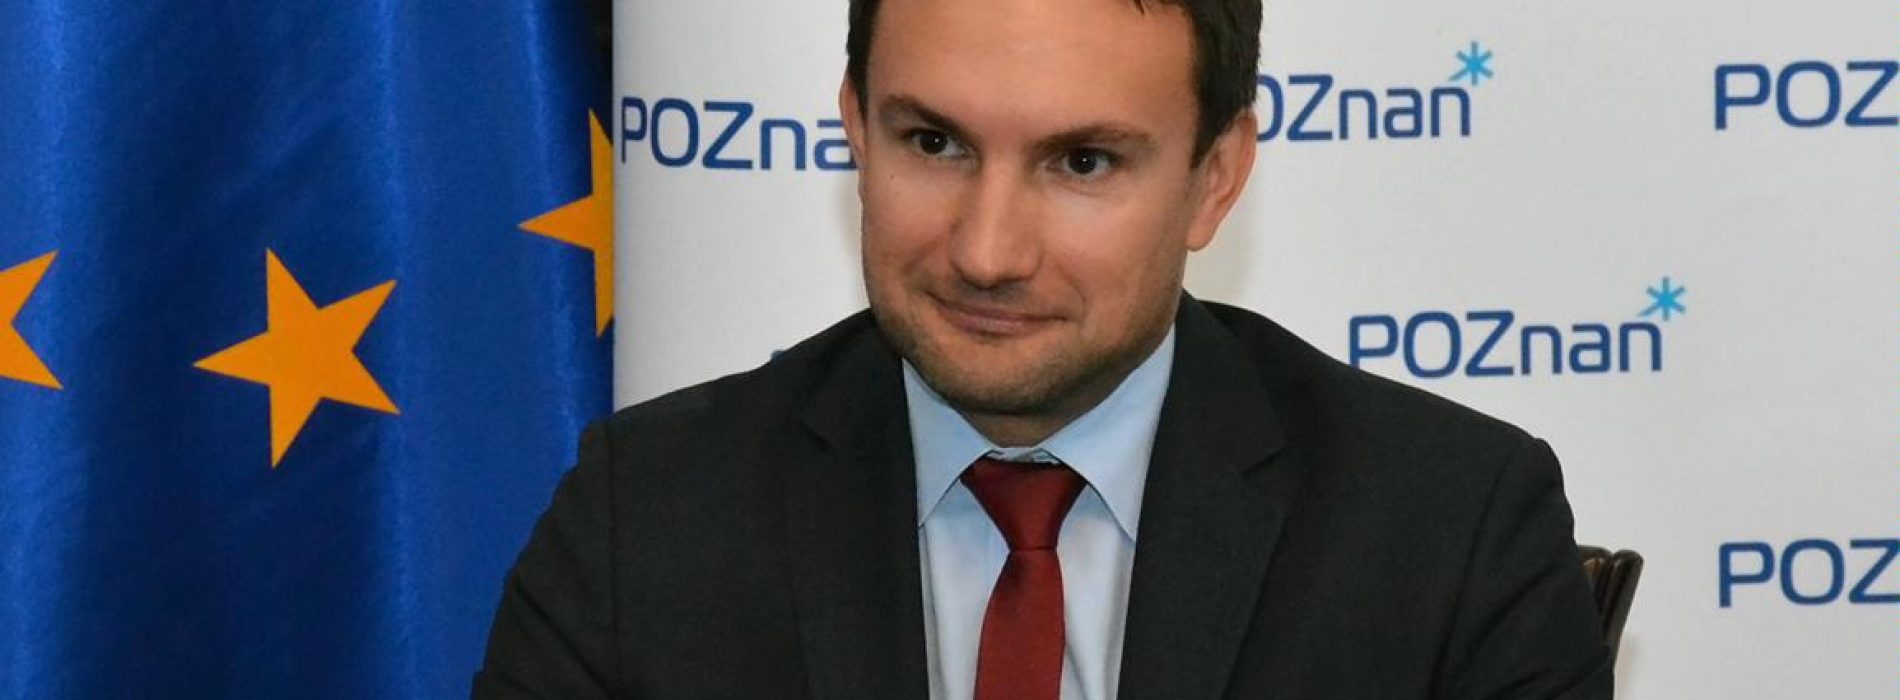 Tomasz Lewandowski nowym wiceprezydentem Poznania